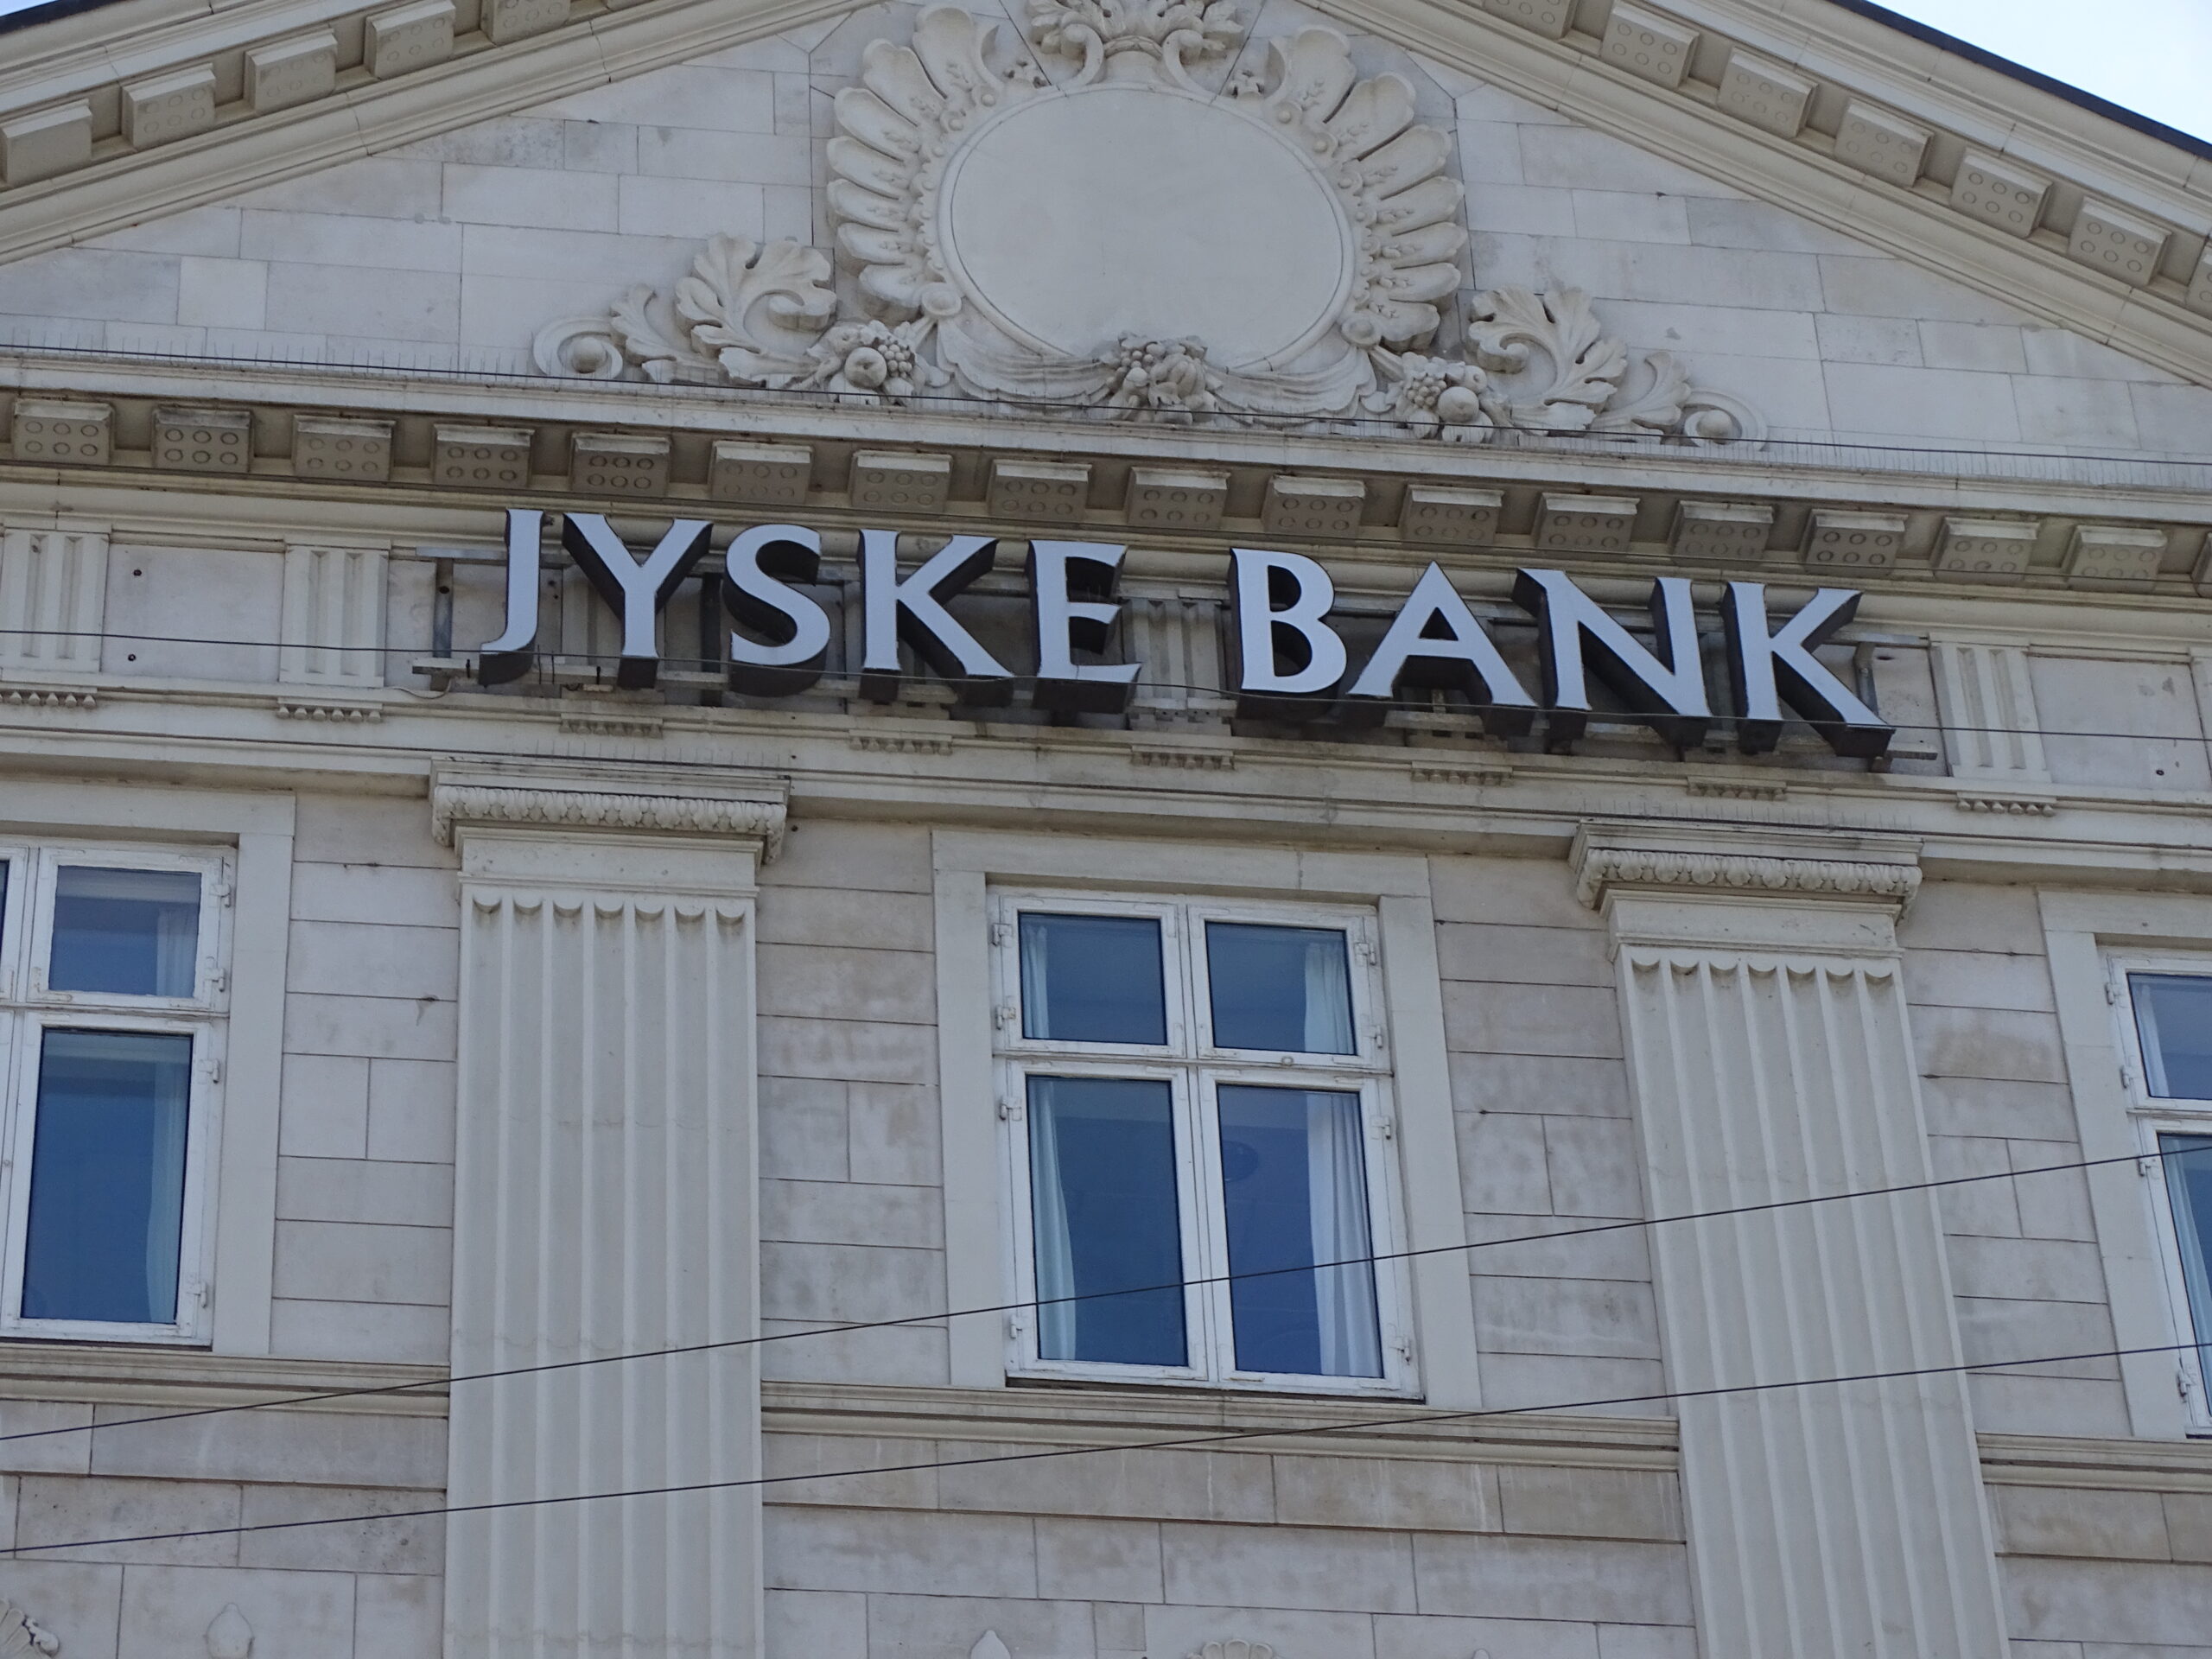 Her 2 Jyske Bank biler 29 juni 2022. Uden for Jyske Banks forretnings vinduer på Gammel Kongevej 136. Det som Jyske Bank, siger her i optagelsen, fra 22 juni at JYSKE BANK SIGER OM Jyske Bank BILEN, AT DE TAGER DET SOM ER JOKE, Denne sag handler om BØR Jyske Bank have retten til at drive finansiel virksomhed, herunder bankvirksomhed i Danmark. Denmark has a major problem with legal certainty, as employees of the National Courts Administration knowingly and dishonestly, and by camaraderie, cover up economic crime, including corruption, which some of the largest Danish companies, including Jyske Bank A/S, are behind. Jyske Banks medarbejdere lyver igen 22-06-2022, da medarbejdere i Jyske Banks afdeling på Gammel Kongevej 136, siger, til den kunde der spørger om det der står på Jyske Bank bilen uden for Jyske Bank, er sandt. Kunden fortæller at i Jyske Bank på Frederiksberg er være blevet oplyst, at den omtalte verserende sag mellem Storbjerg Erhverv ApS og mod Jyske Bank A/S. Er tabt 2 gange. både i byretten og landsretten ?. Men det var ikke det kunden stillede spørgsmål om, kunden spurgte de ansat i banken på Frederiksberg, om det der står på bilen uden for bankens facade er sandt. JYSKE BANKS MEDARBEJDERE KAN FÅ 44.000 DKK. FOR AT MODBEVISE DET JEG SKRIVER. Og du kan få op til 40.000 DKK hvis du kan modbevise det jeg skriver, hør hvad jeg siger til Jyske Bank og dig der vil være med i konkurrencen. Jyske Bank medarbejdere siger her 22 juni i denne optagelsen, for os er det bare en joke. Jyske Banks ansatte på Gammel Kongevej lyver og siger sagen mod Jyske Bank er tabt i landsretten, selv om sagen ikke engang er blevet berammet inu, link til mail med punkt 1-14. Danmarks måske morsomste Bank, Jyske Bank A/S siger mere om Jyske Bank bilen